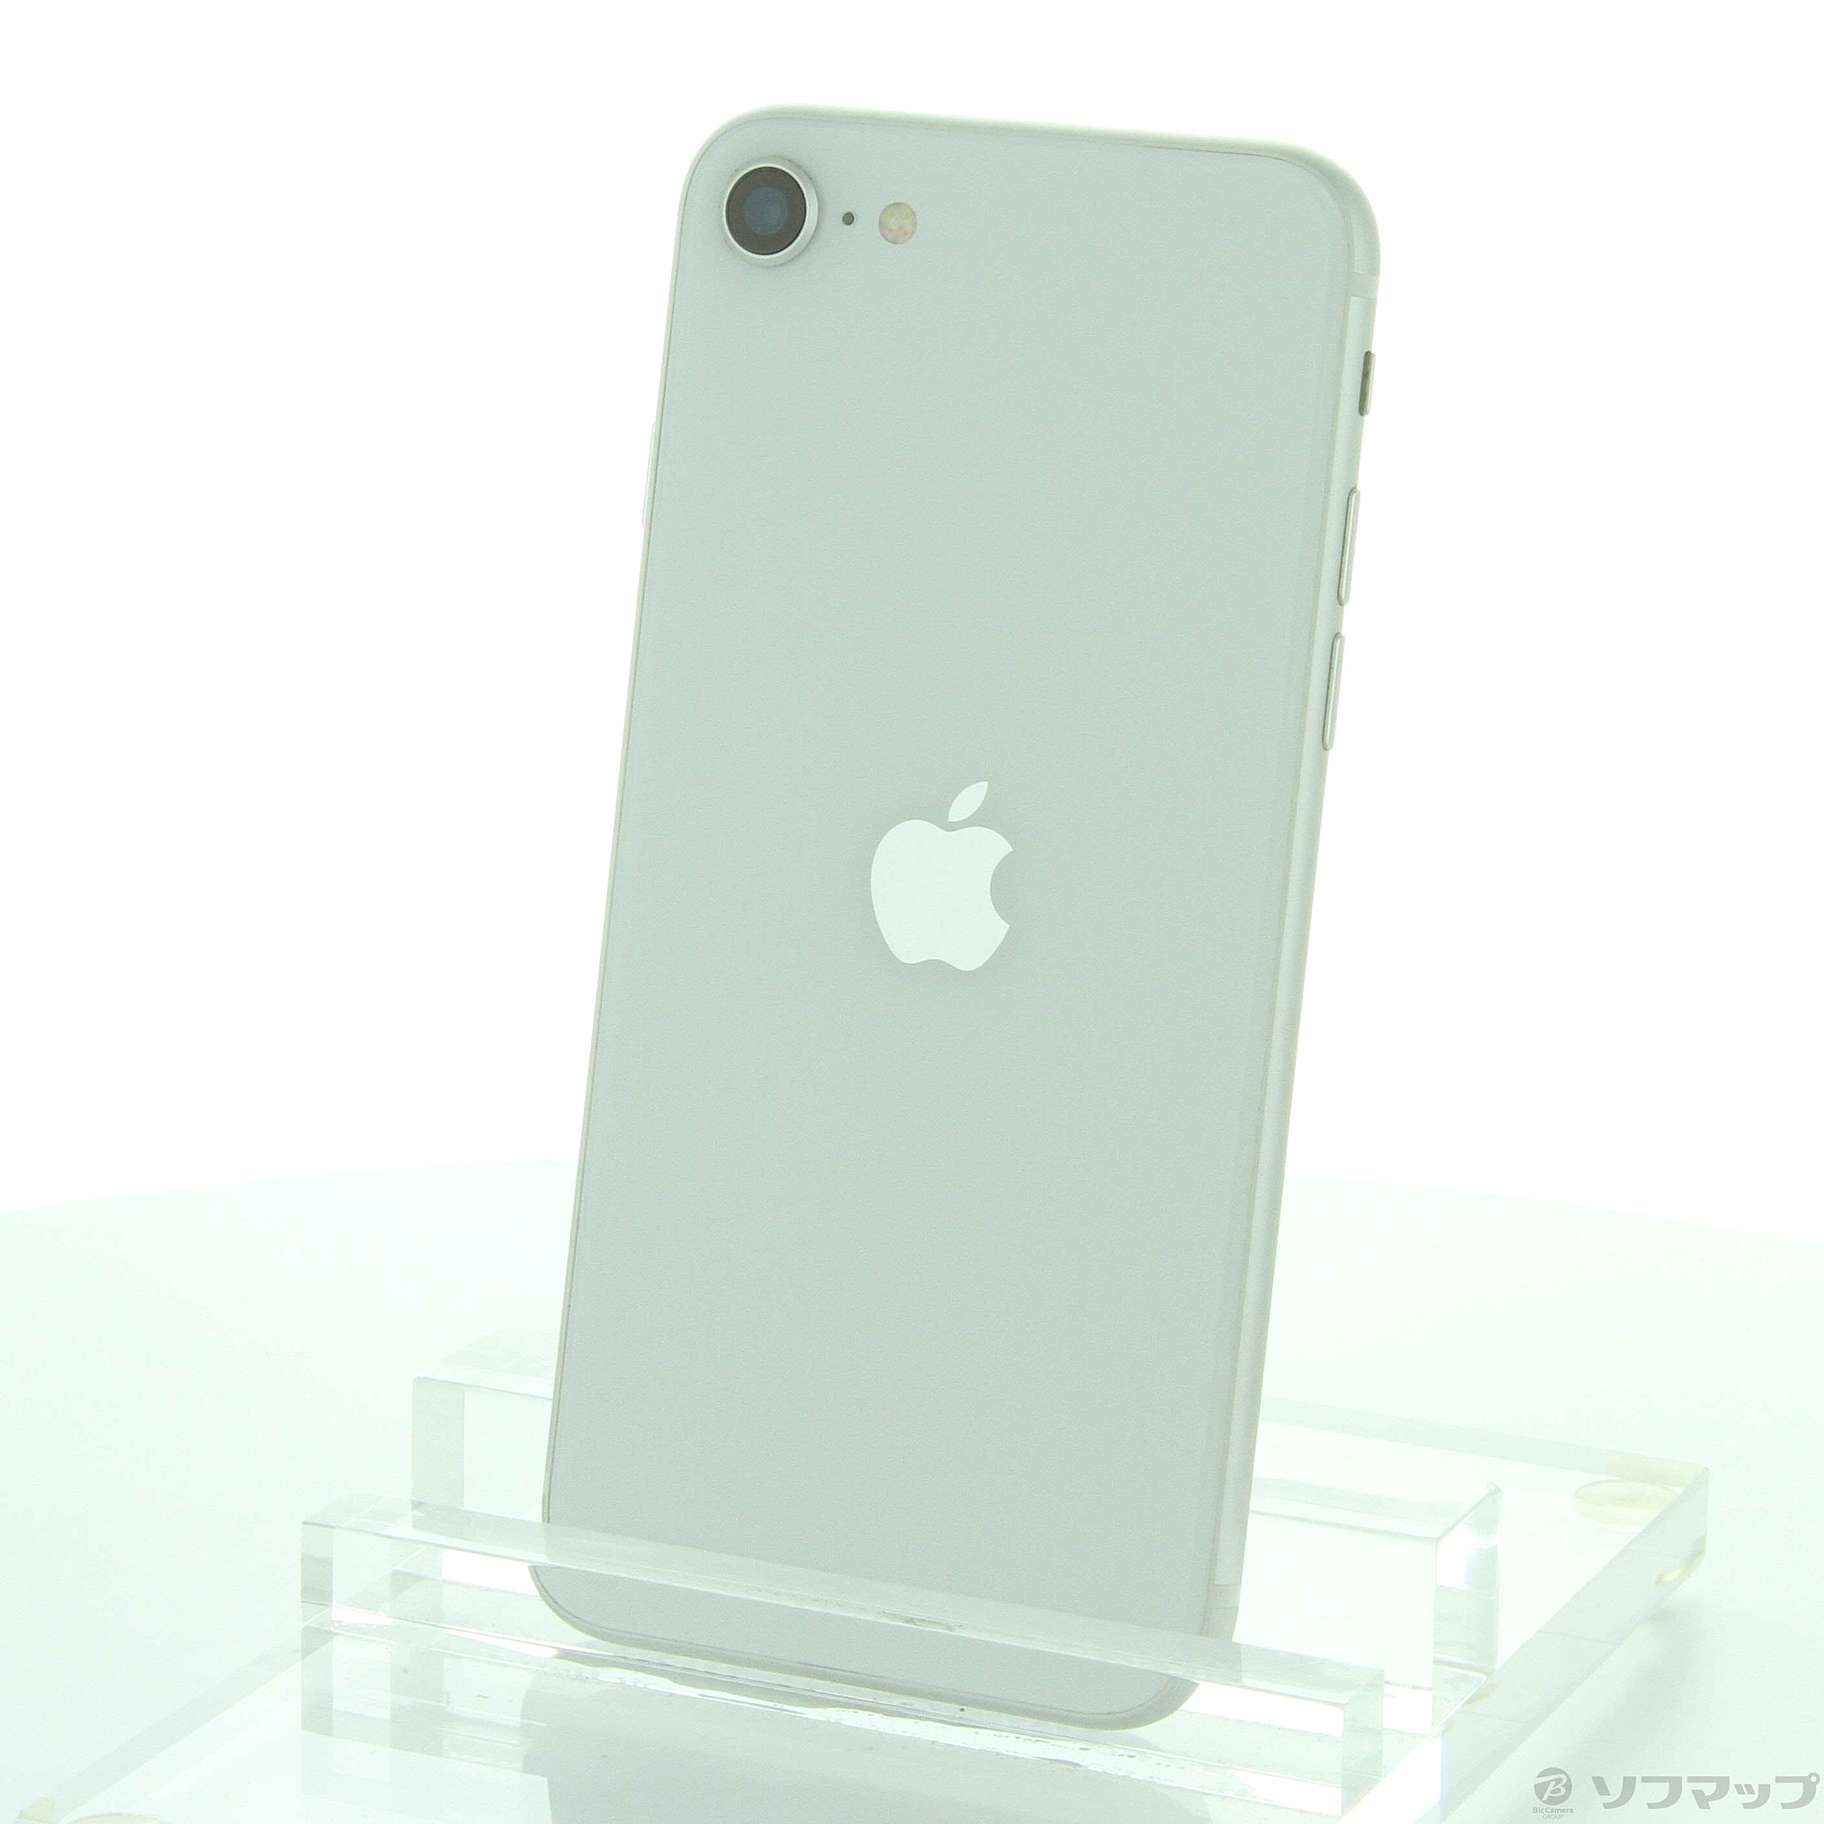 解除済みバッテーリー最大容量iPhoneSE 第2世代 128GB ホワイト